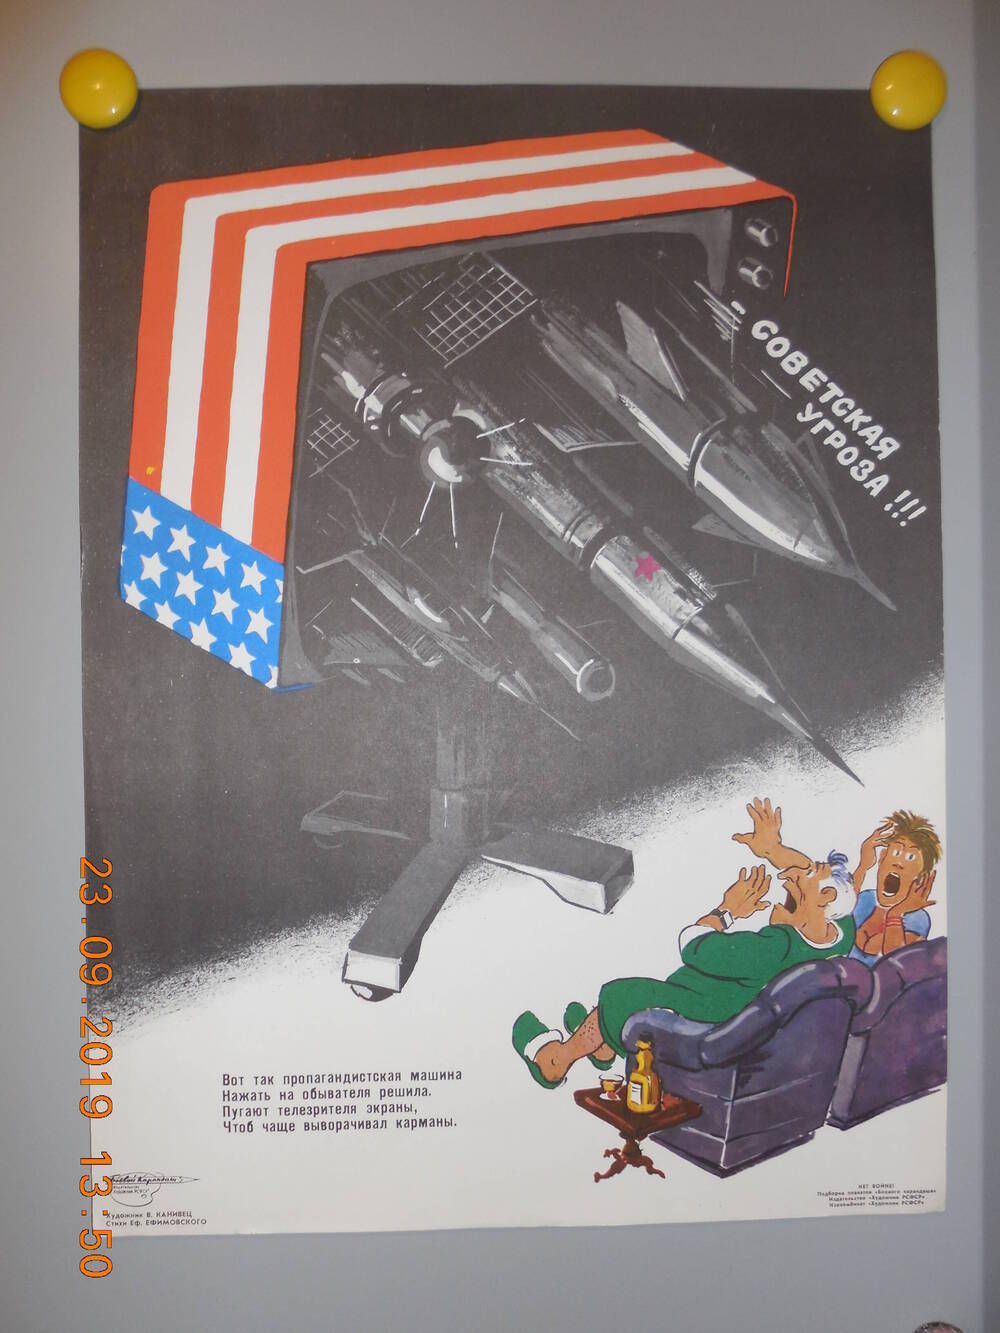 Плакат из подборки сатирических плакатов творческого объединения Боевой карандаш НЕТ ВОЙНЕ
Советская угроза!!!